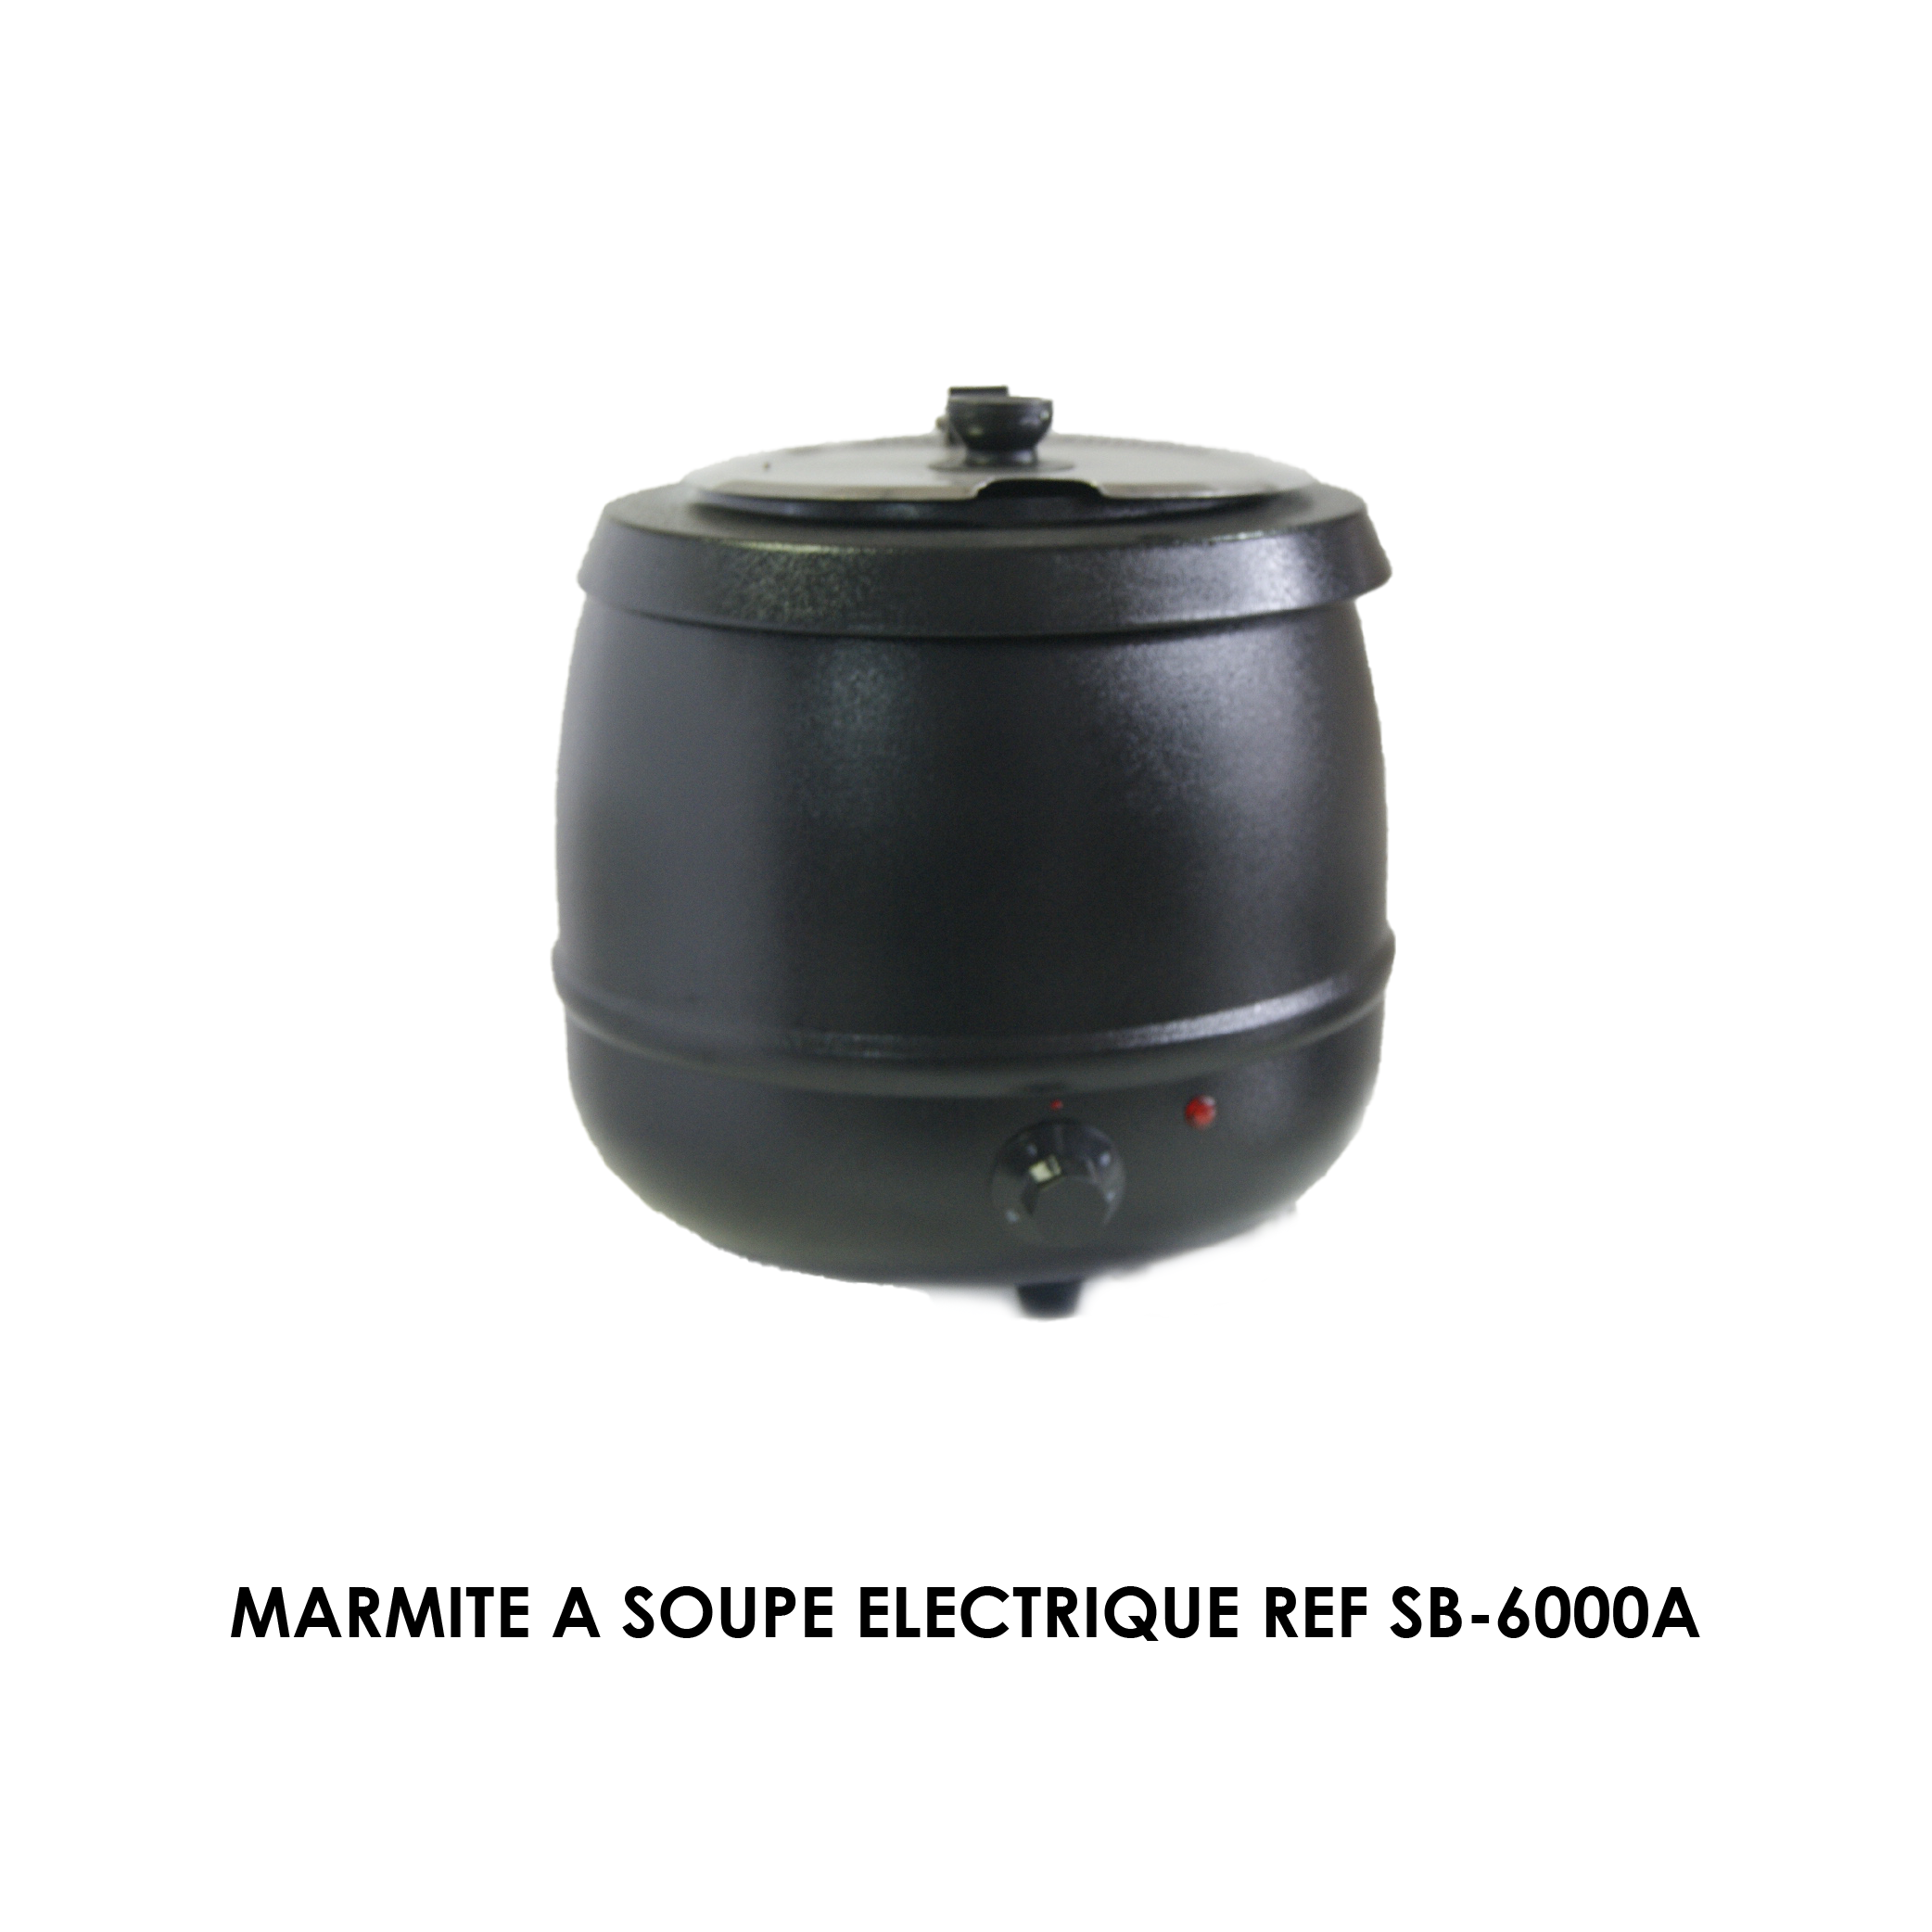 https://www.maroc-cuisine-pro.ma/wp-content/uploads/2022/10/MARMITE-A-SOUPE-ELECTRIQUE-REF-SB-6000A.png